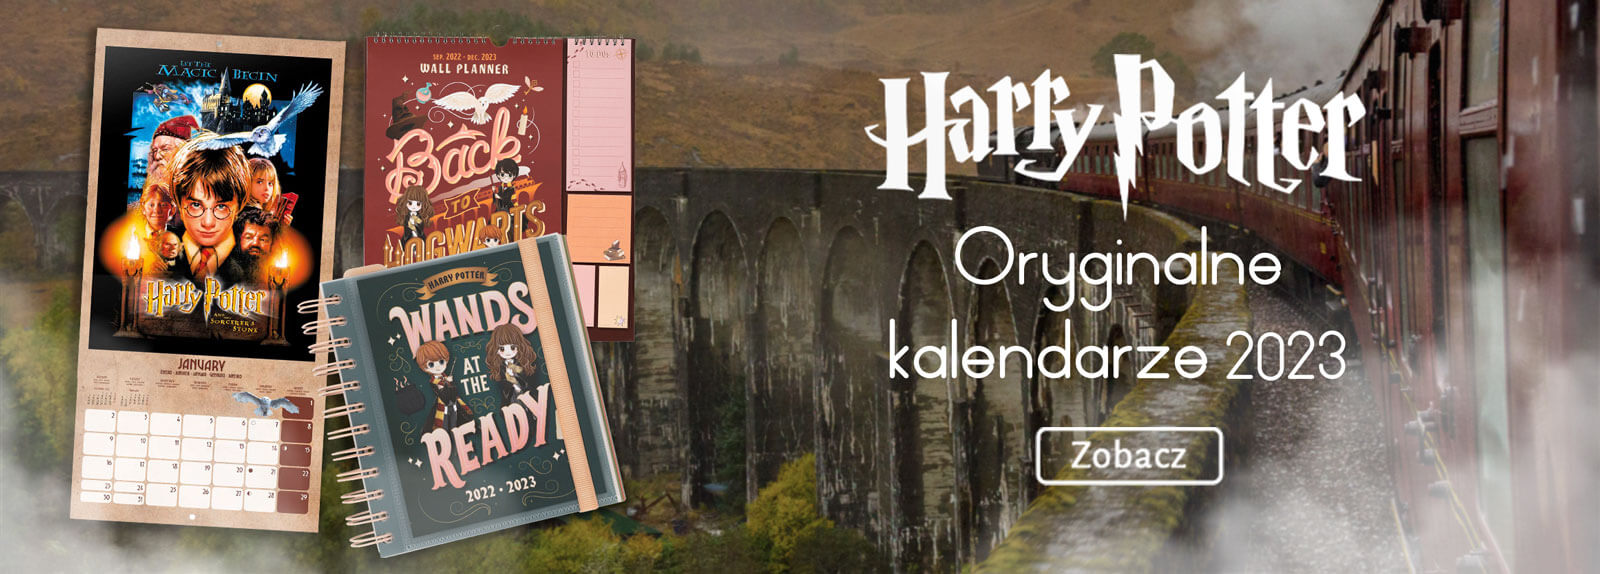 Kalendarze i dzienniki na 2022 rok dla fanów Harry Pottera